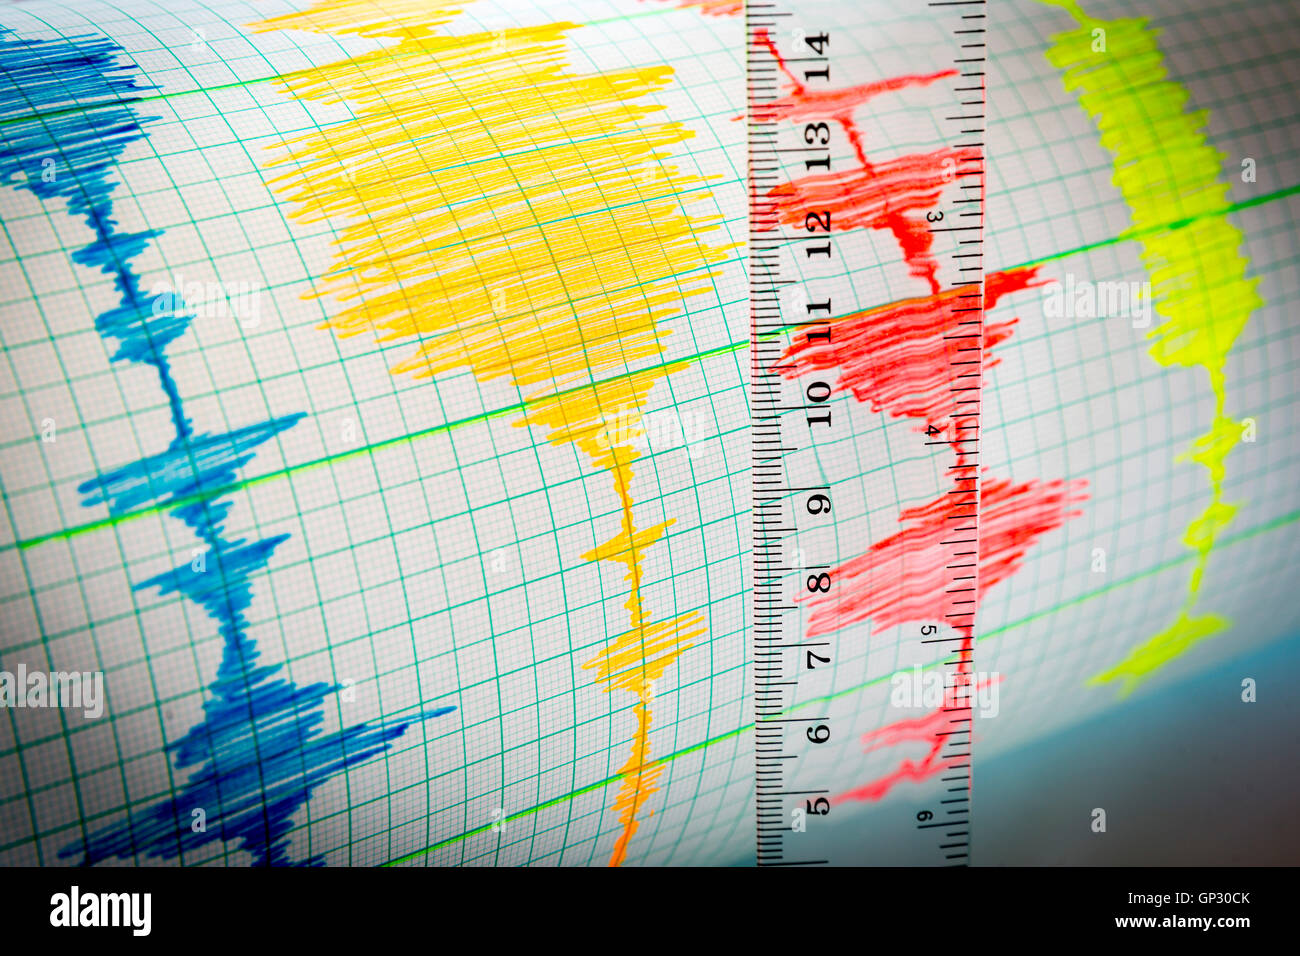 Seismologische Geräte zur Messung von Erdbeben. Seismologische Aktivitäten Linien auf dem Blatt Papier zu messen. Erdbeben-Welle auf Stockfoto